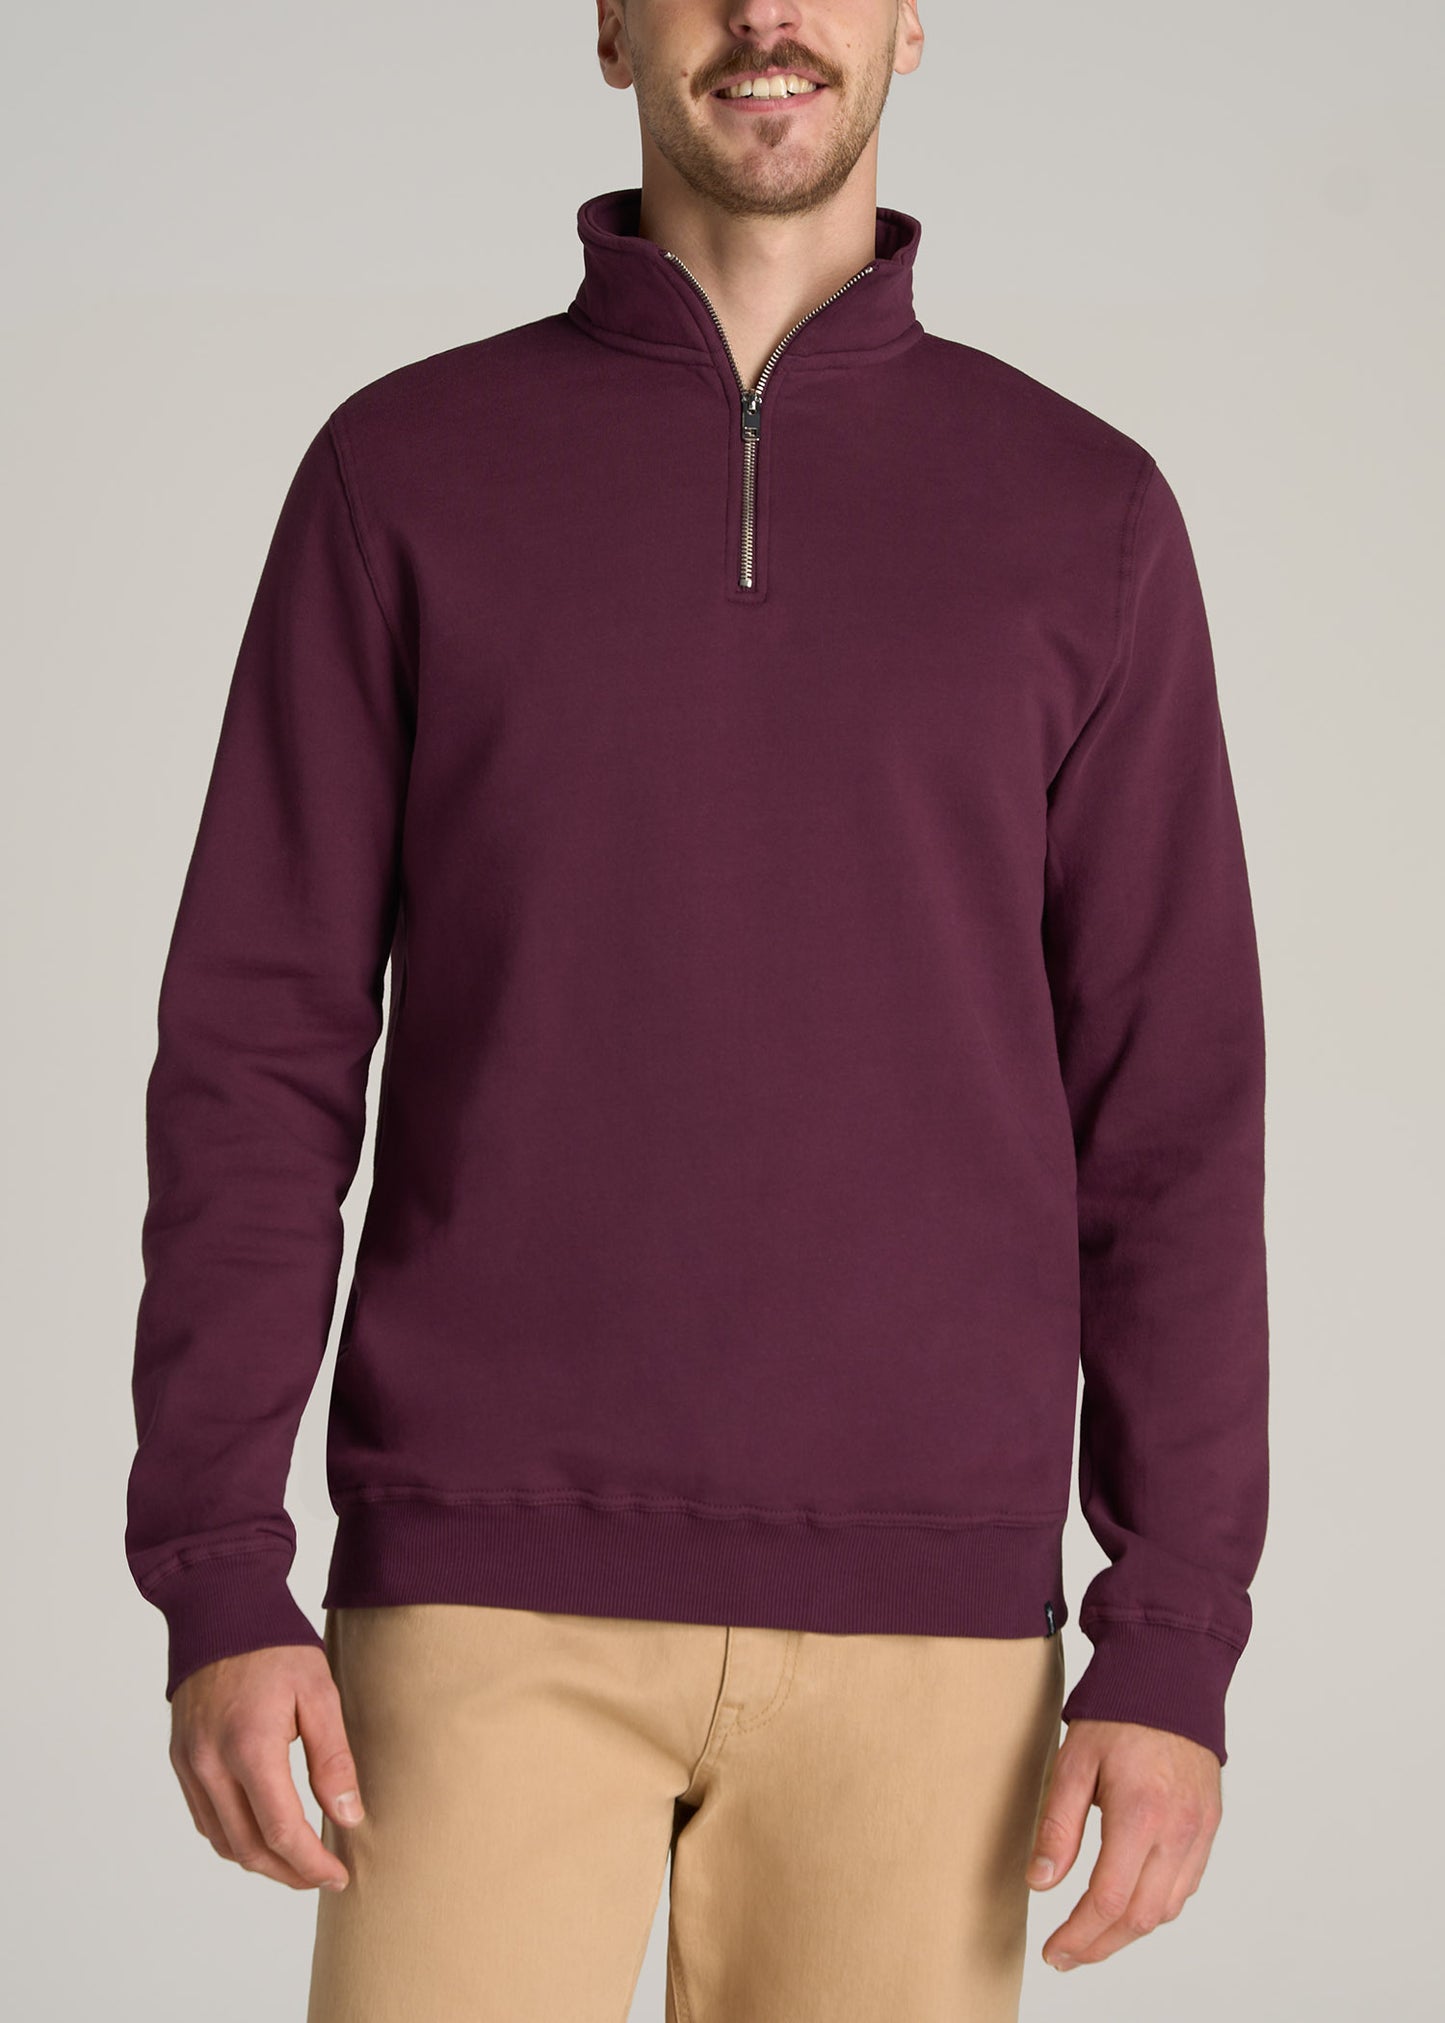 Men's Sweatshirts & Hoodies - Crewneck, Zipper & Fleece